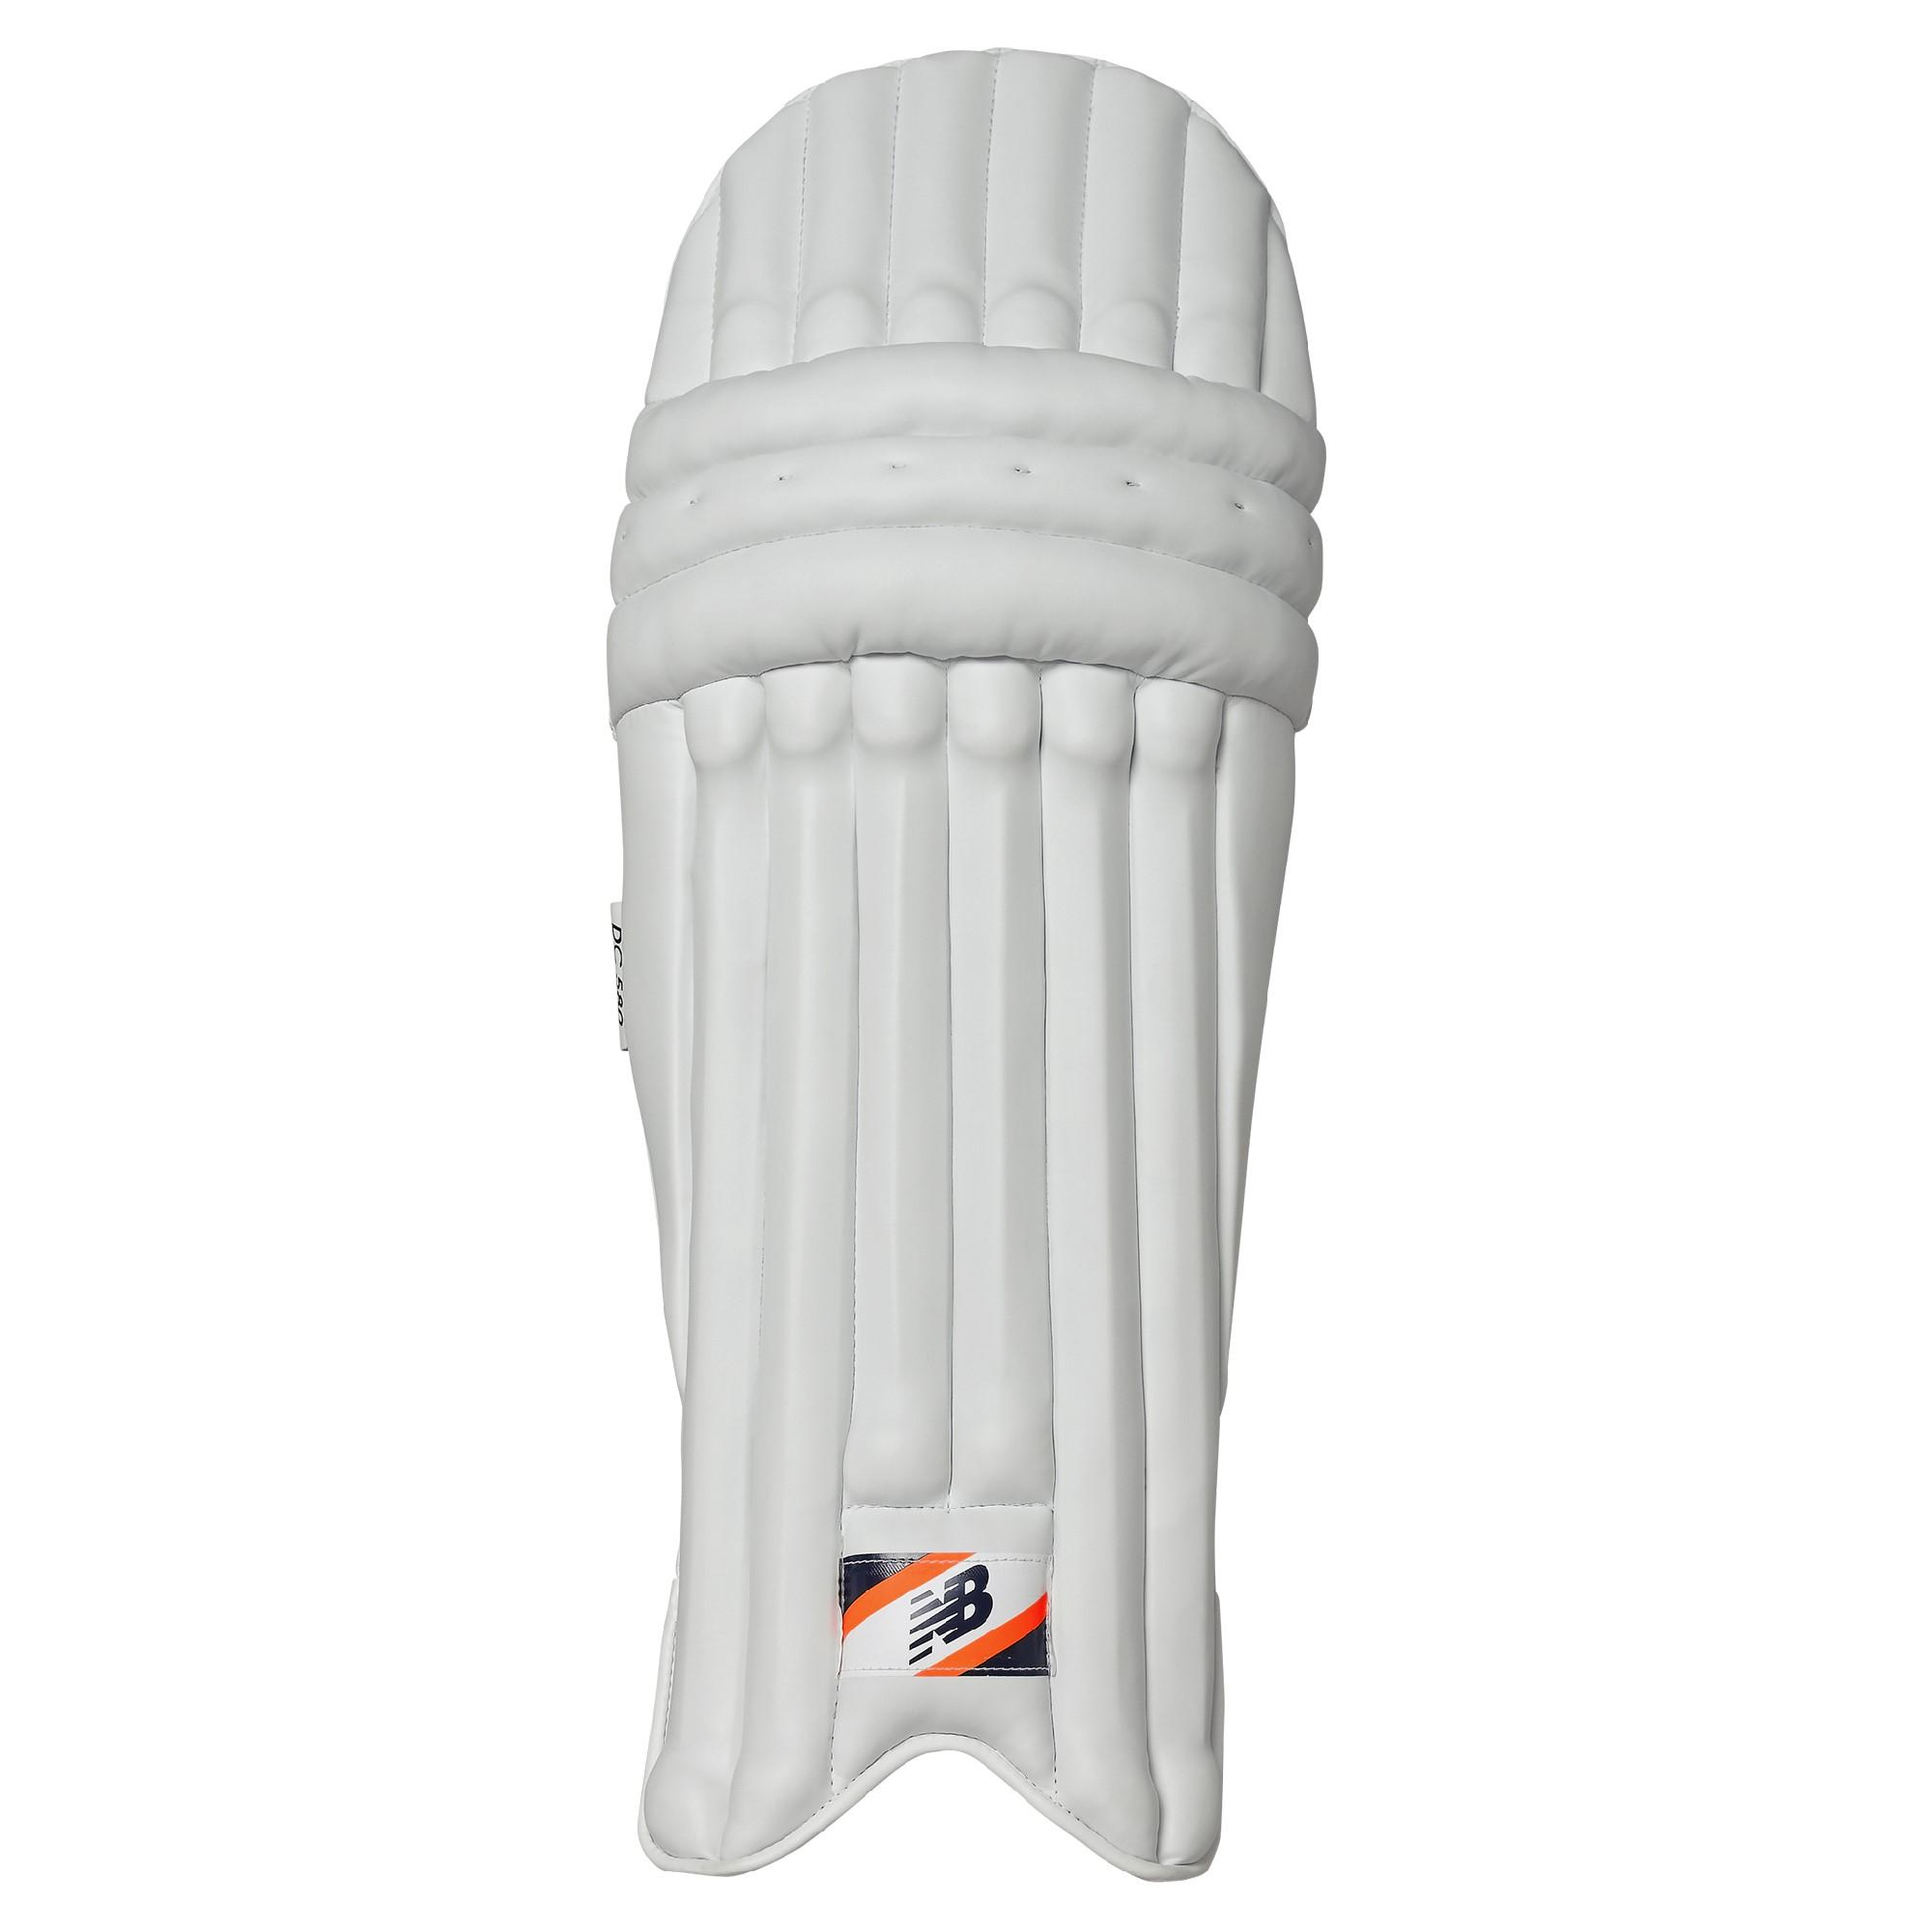 New Balance DC 580 Cricket Batting Pads Ambi Adult